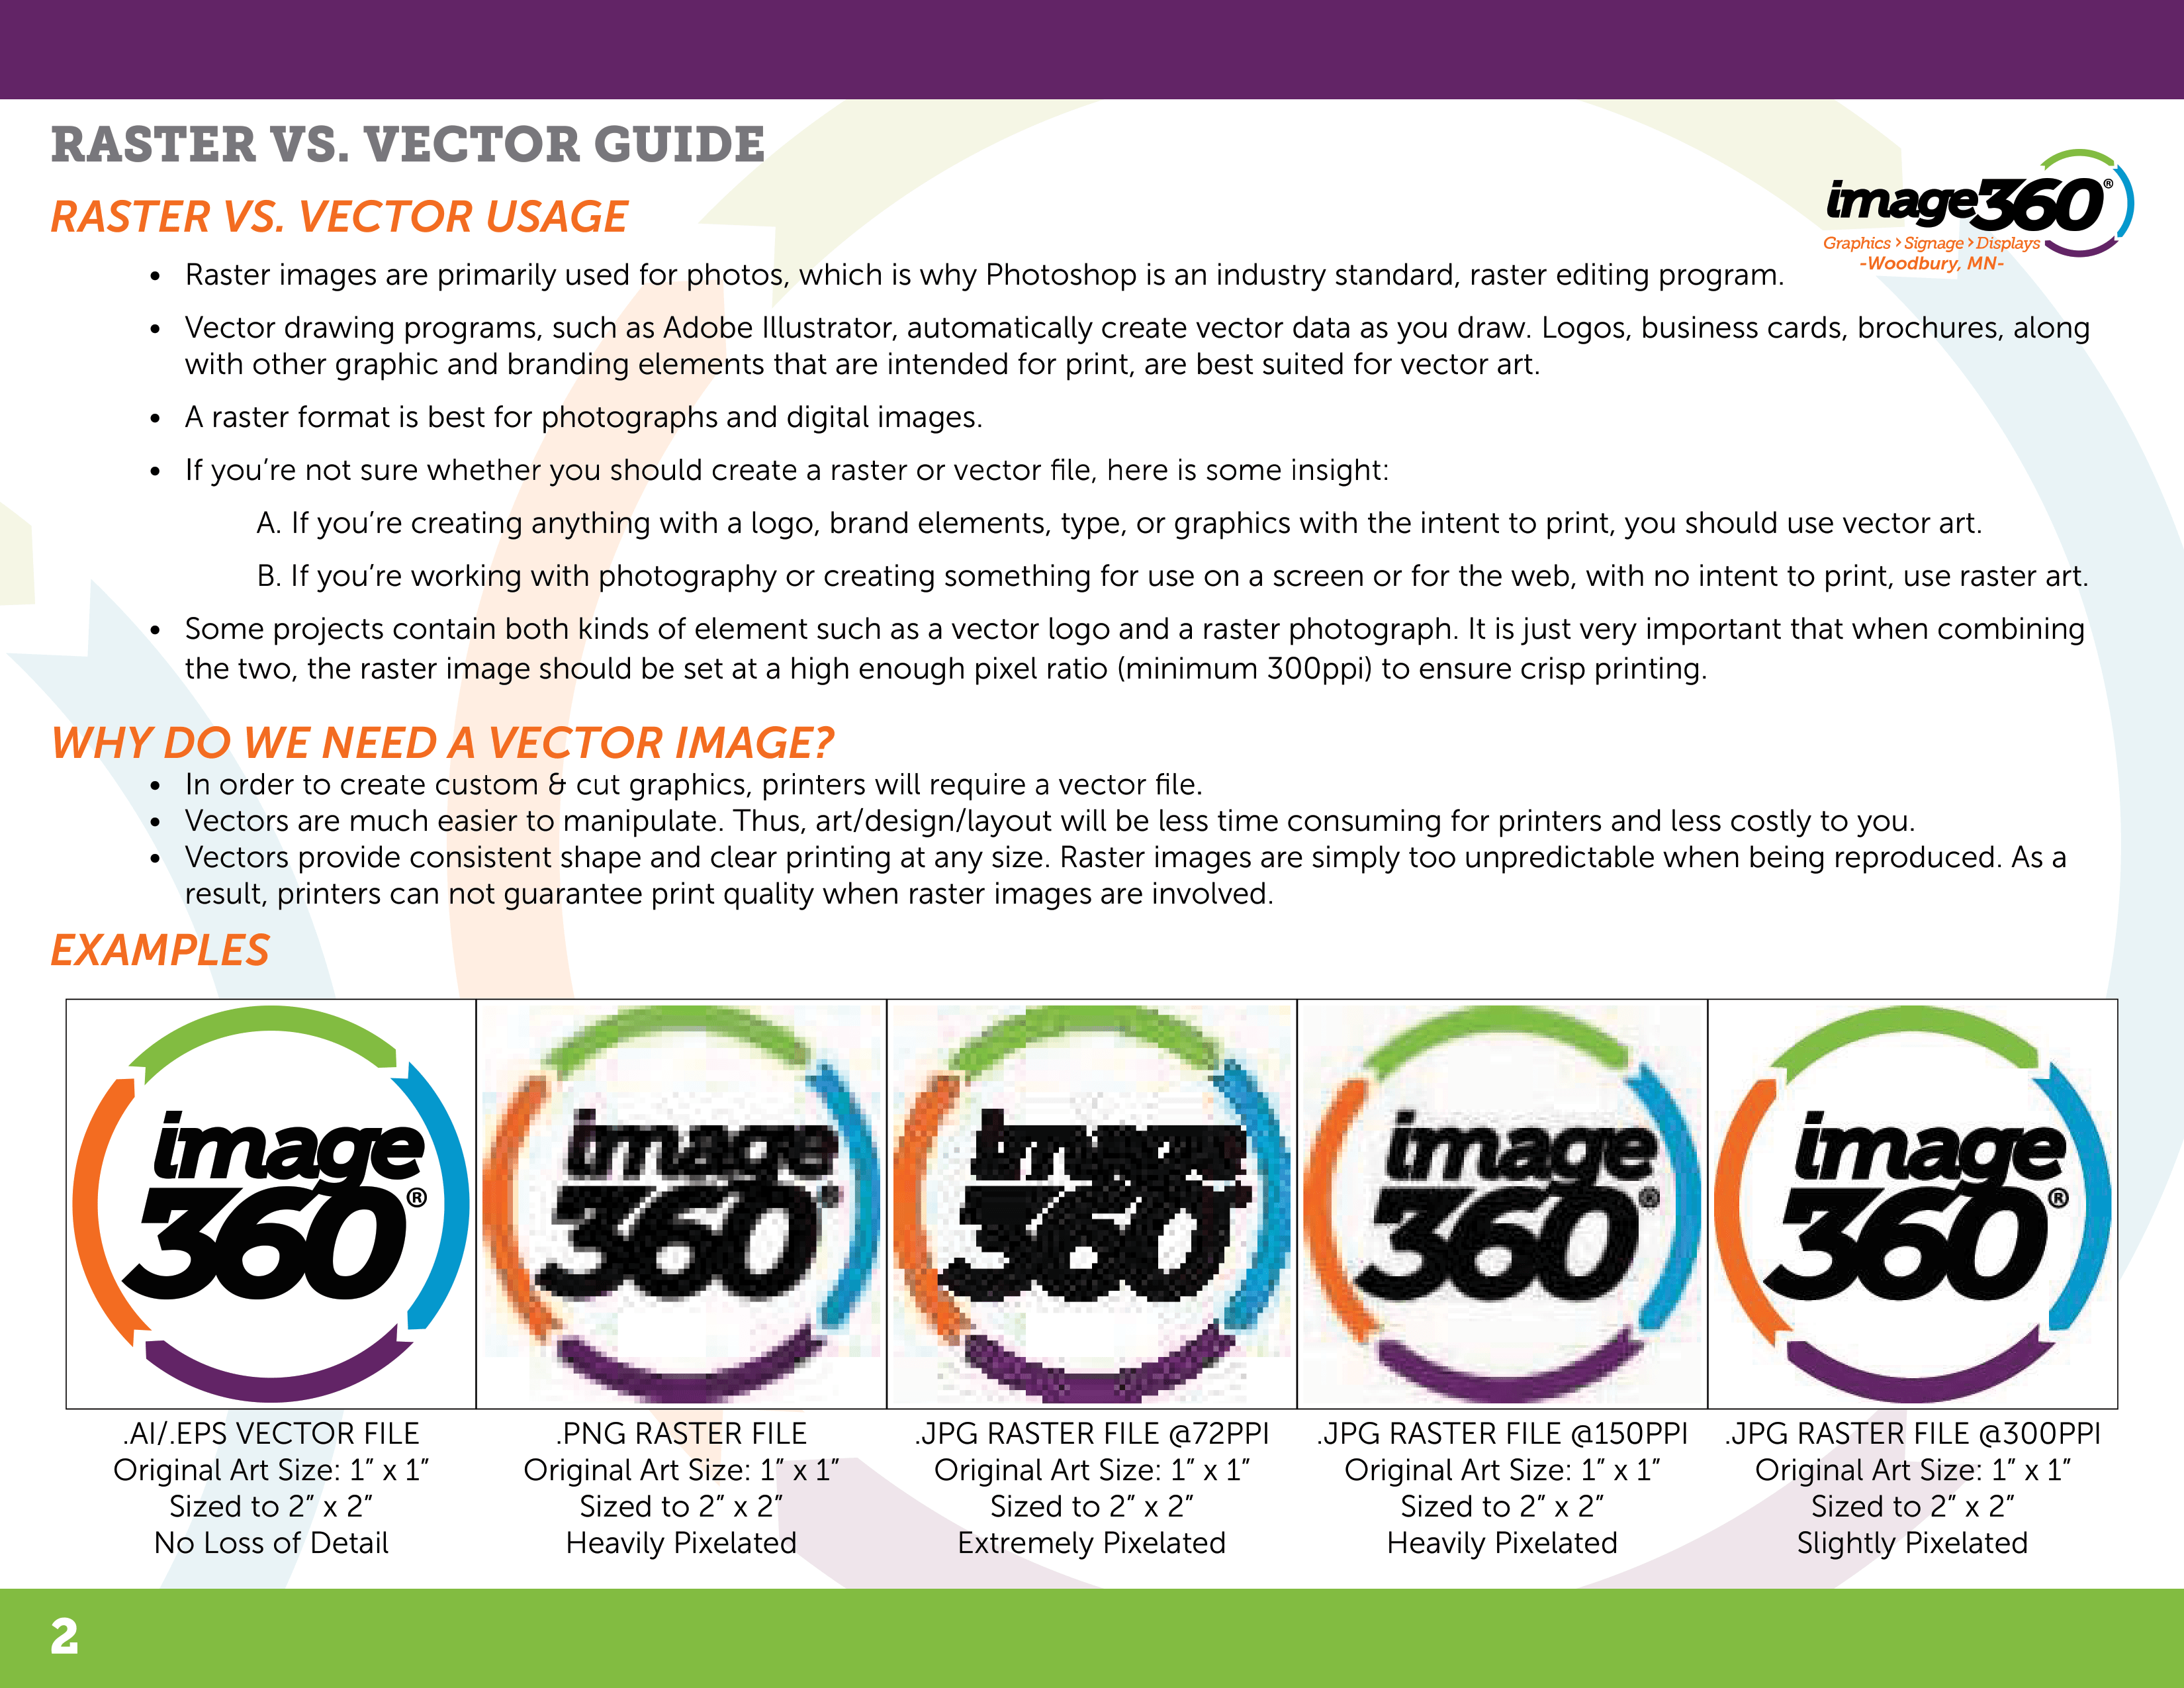 Raster vs. Vector Image Guide Part 2